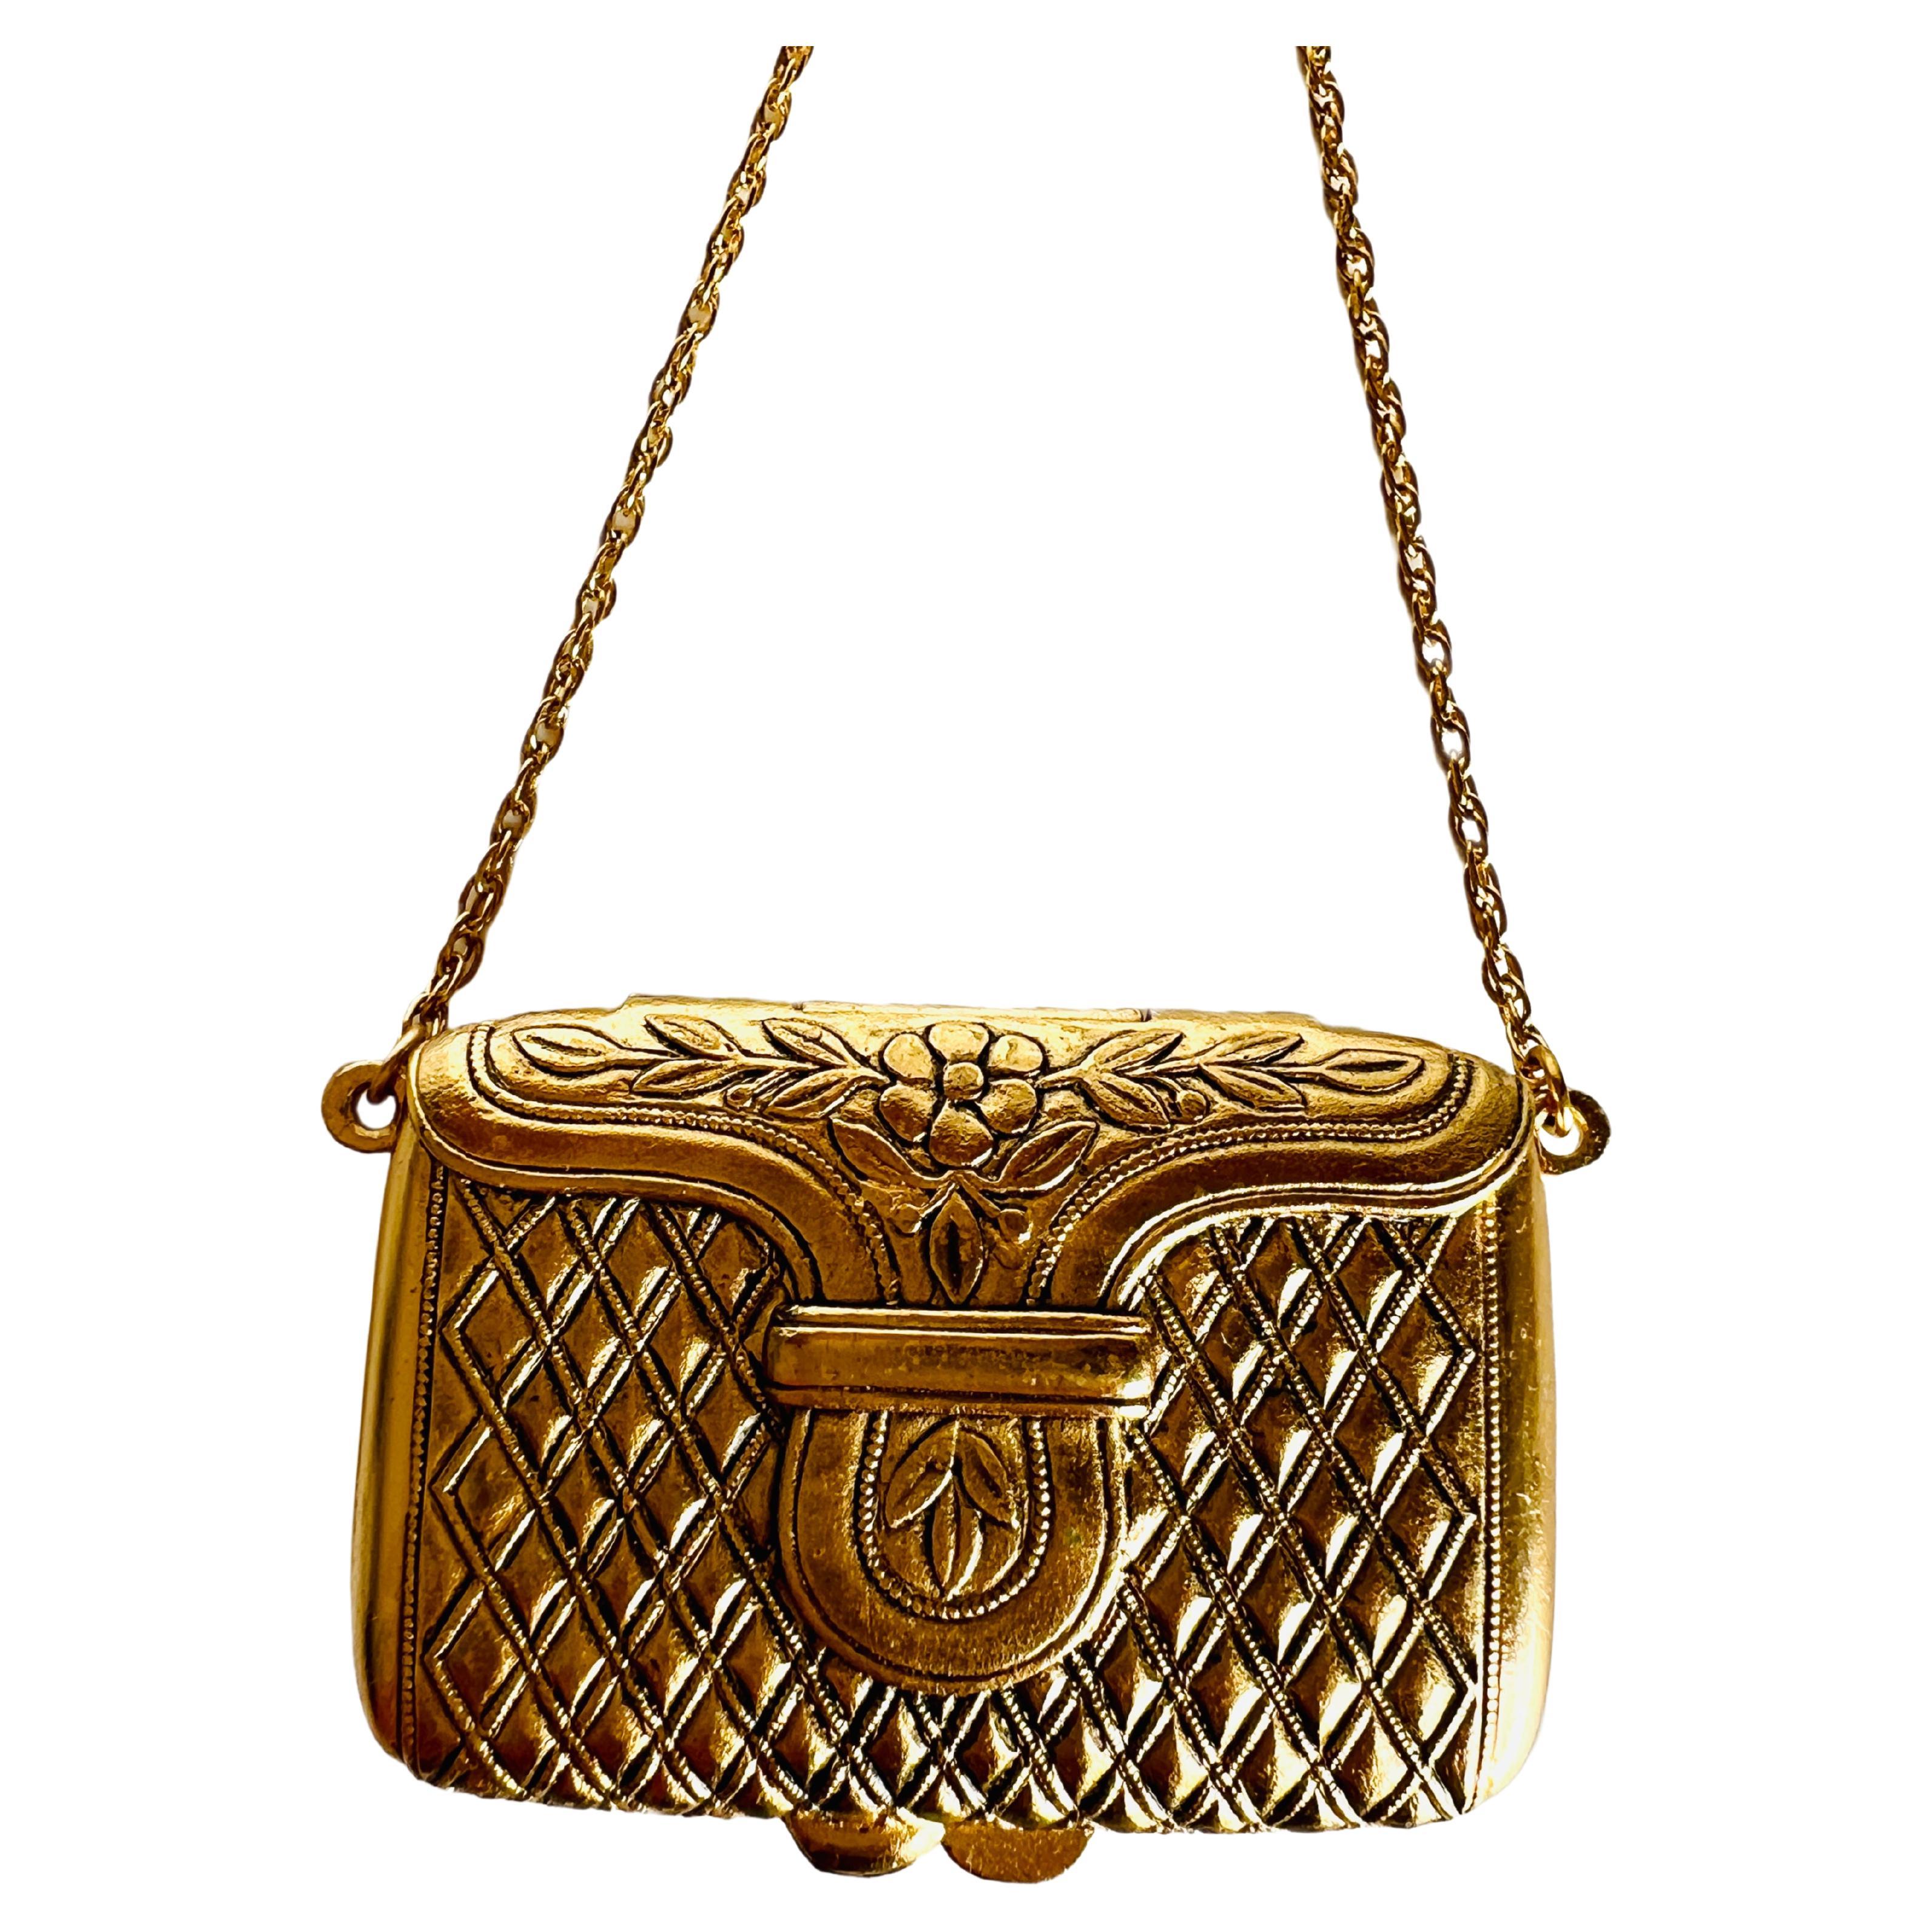 Estee Lauder Perfume Compact Handbag Love Note Locket Chain Necklace